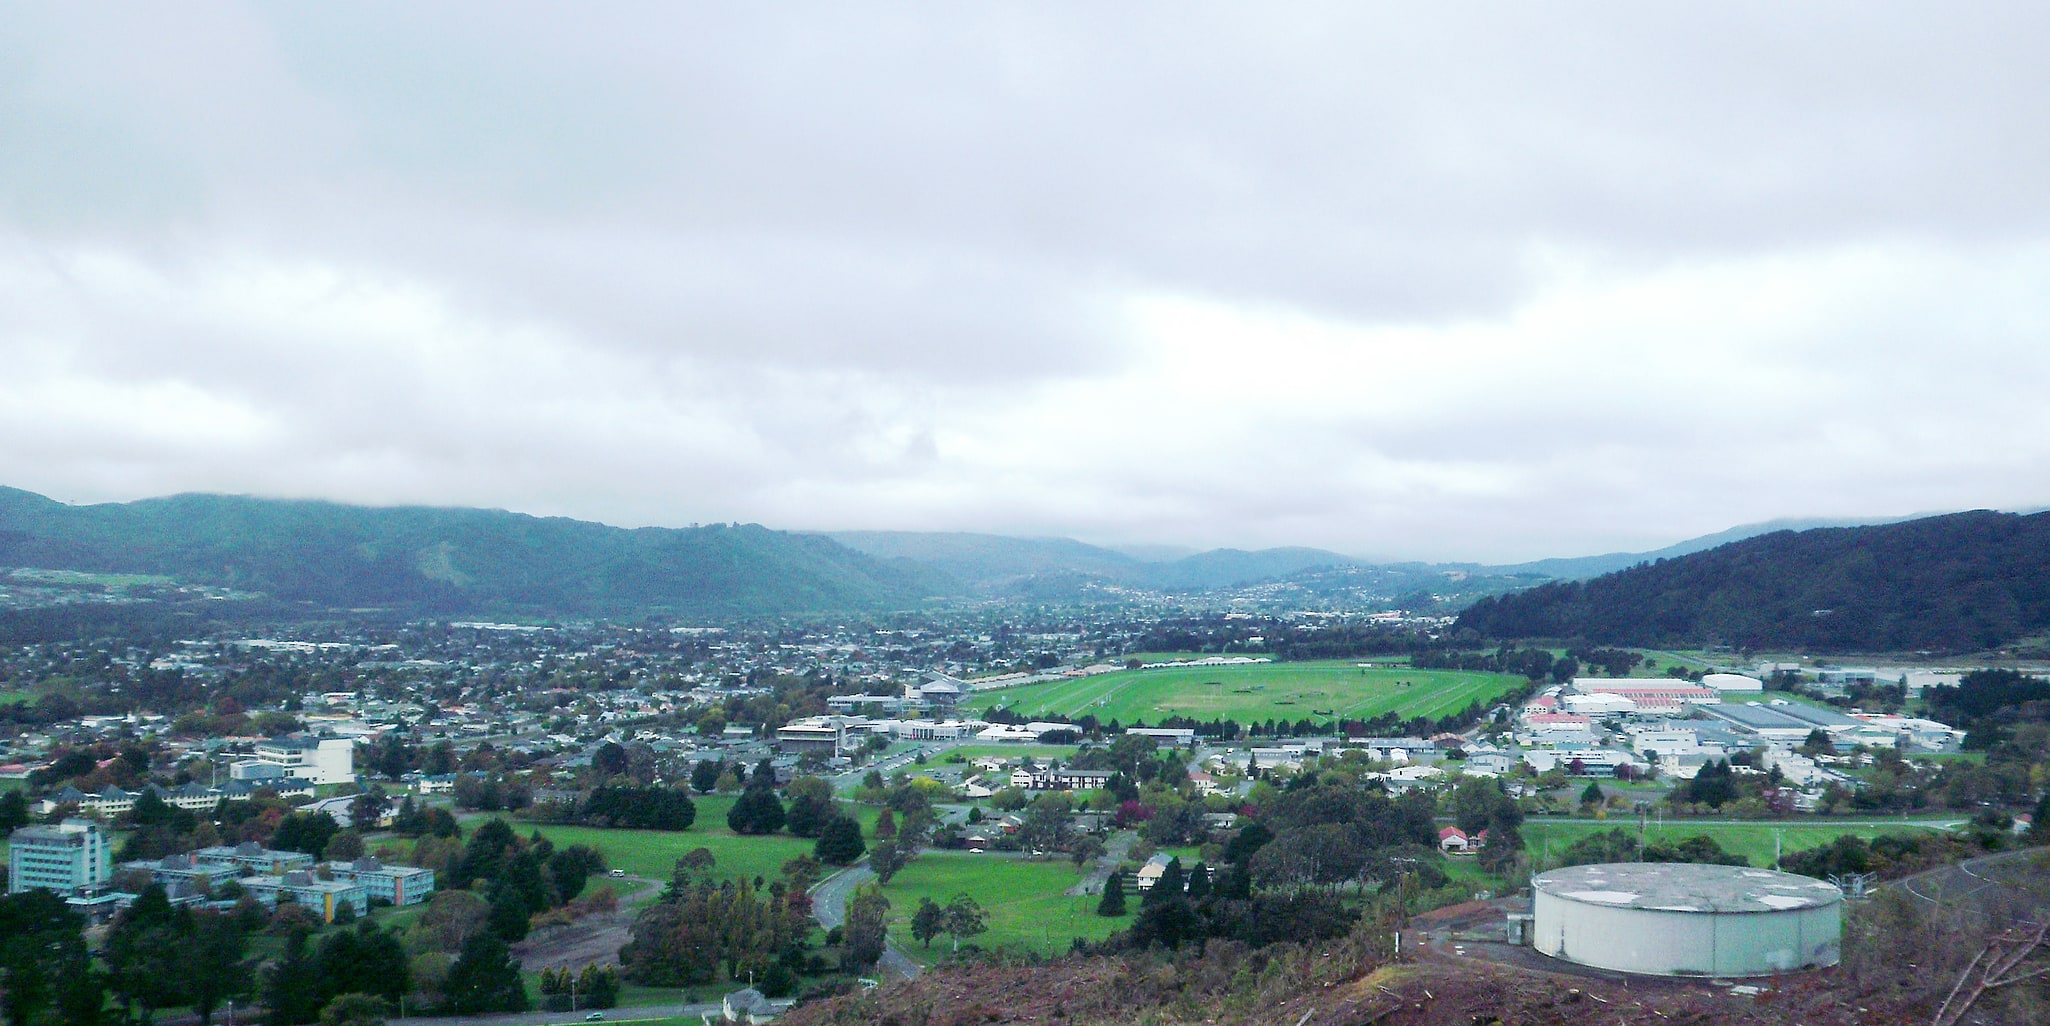 Upper Hutt, New Zealand